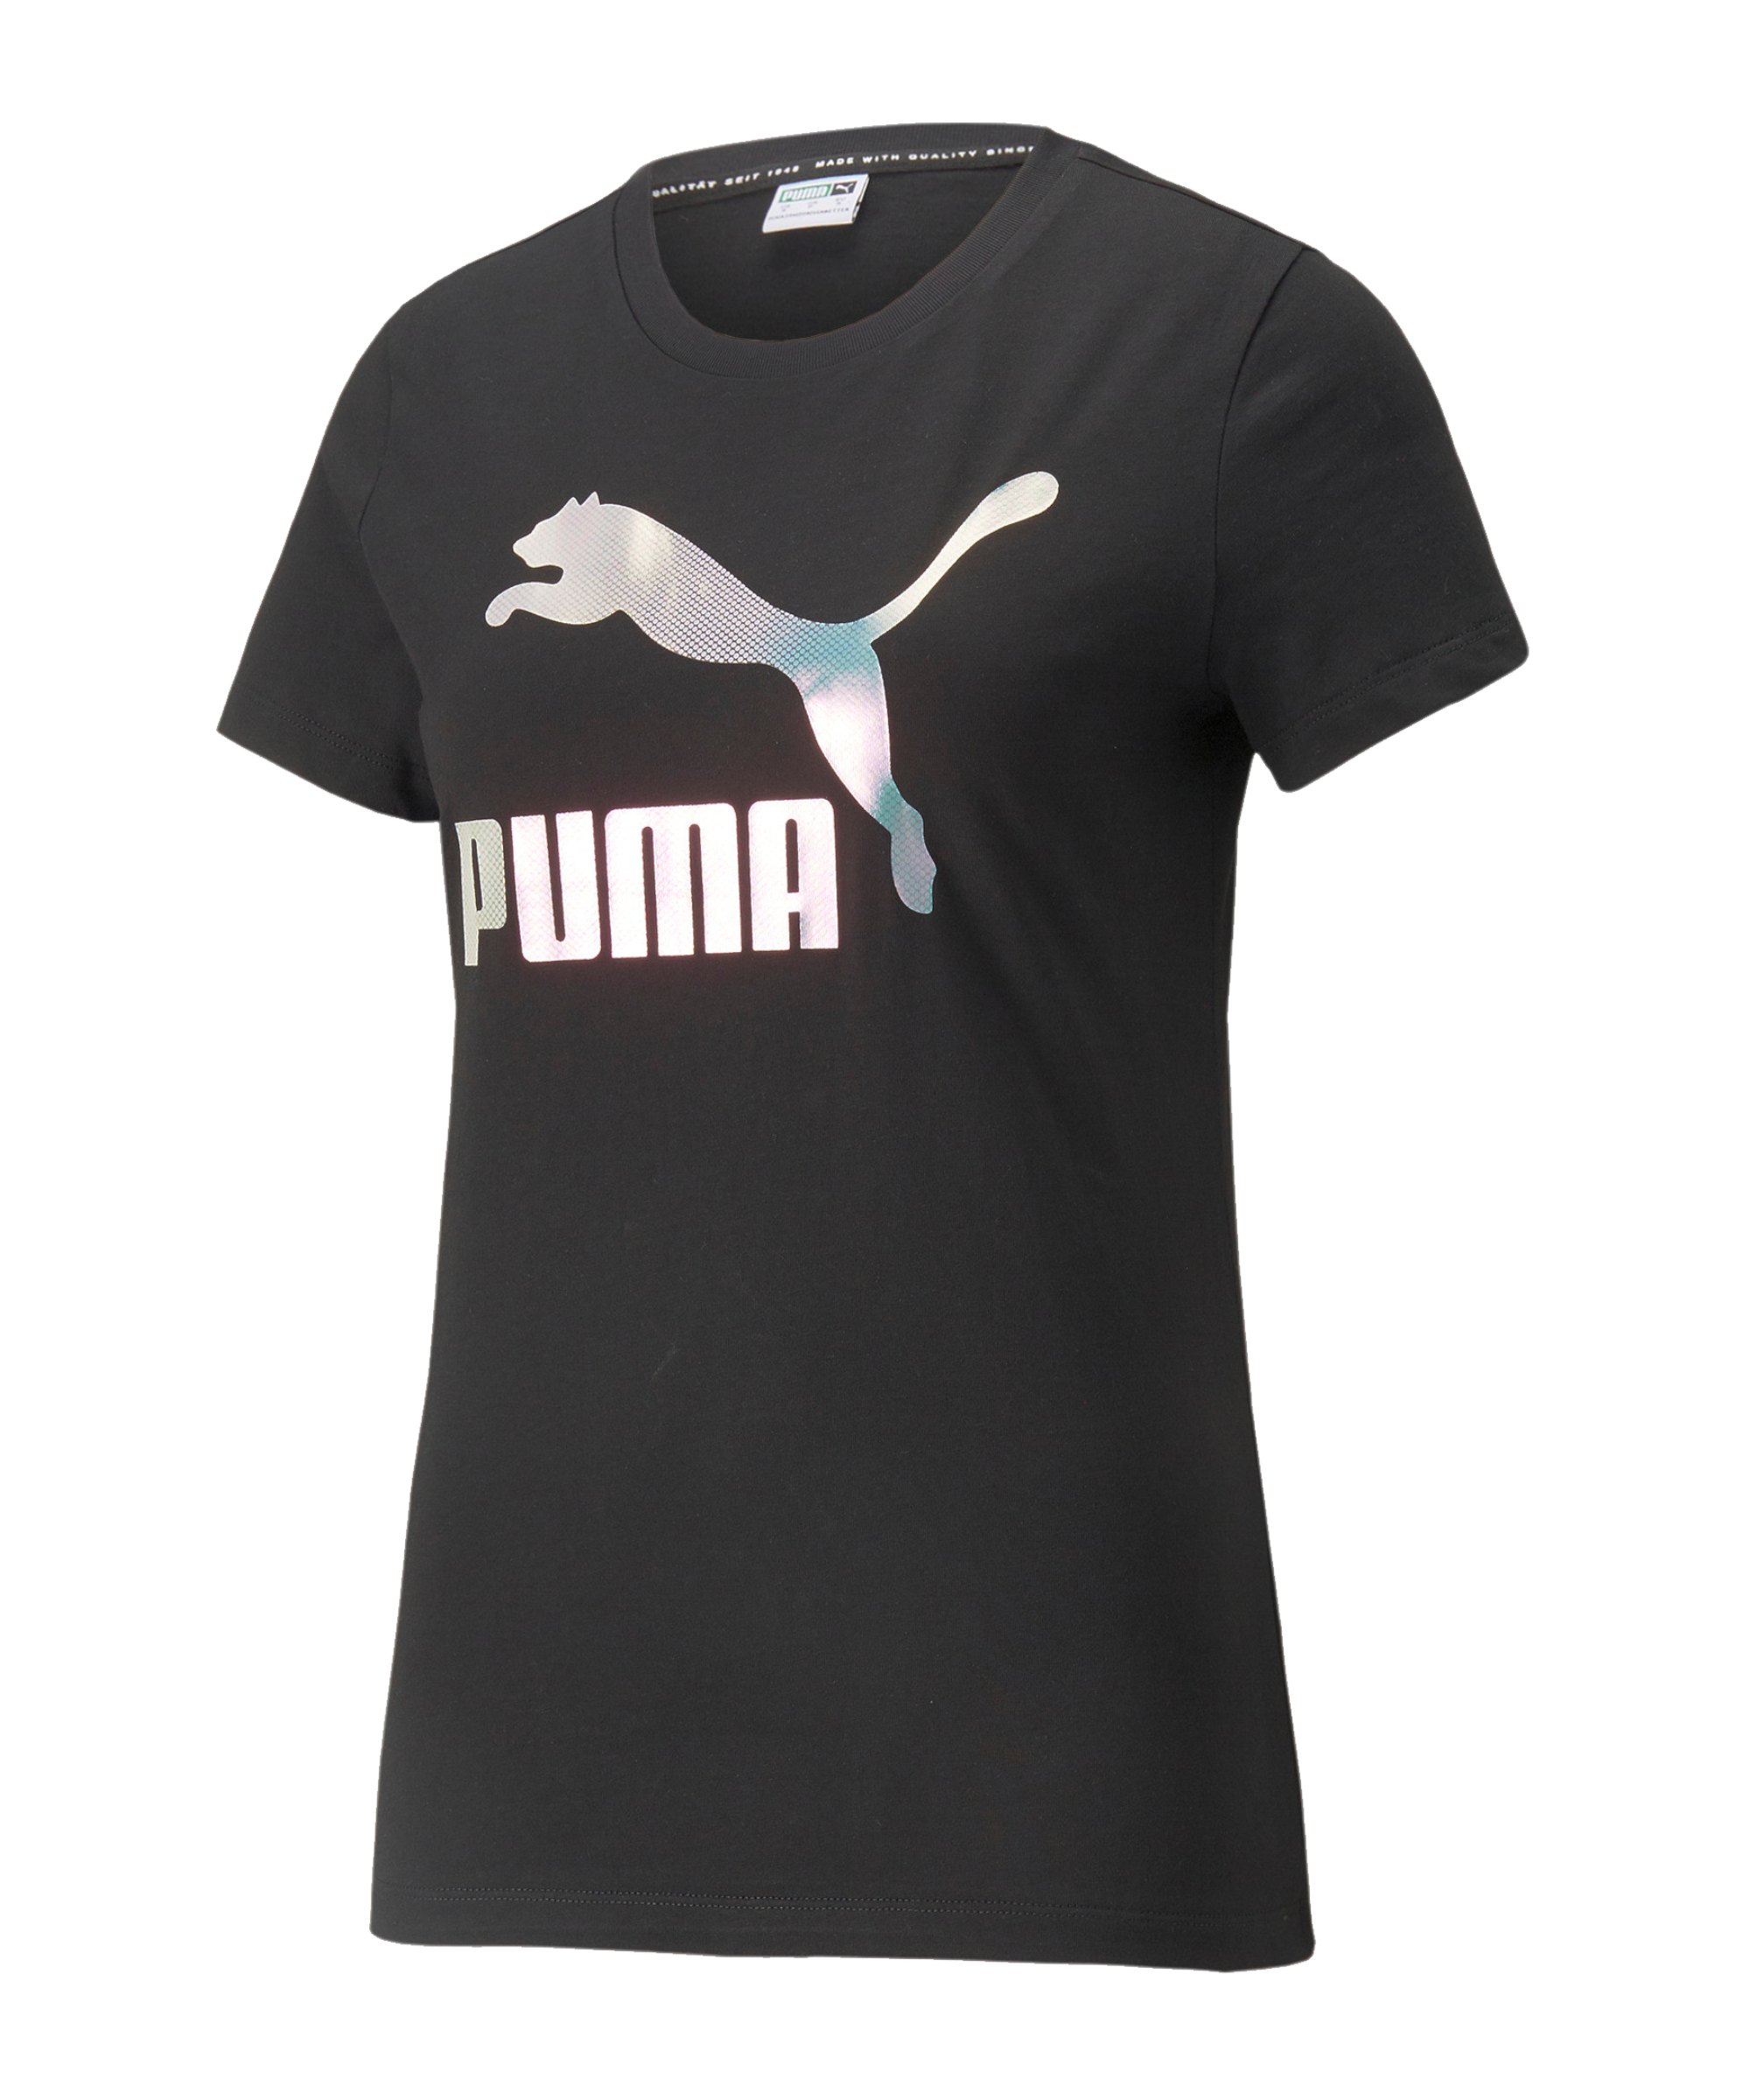 PUMA Crystal G. Graphic T-Shirt Damen Schwarz F01 - schwarz